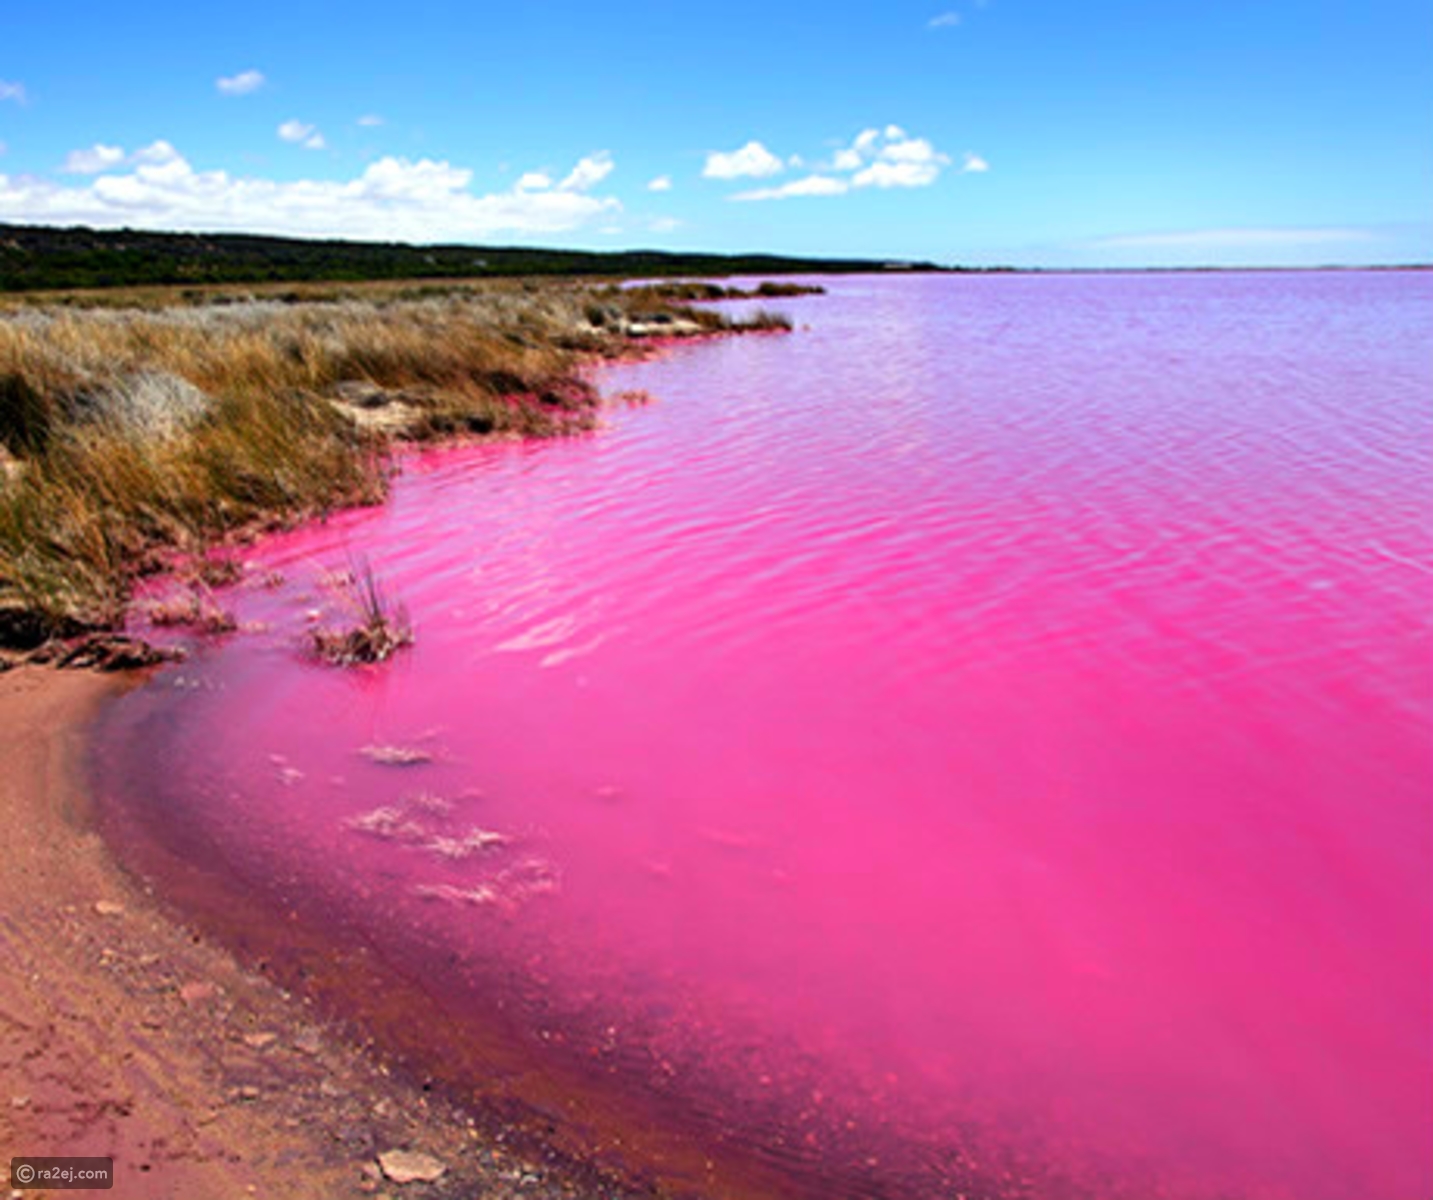 بحيرة هيلير أو البحيرة الوردية في غرب أستراليا 7da00166a7aa48dc79494ef049dca69a1521bff1-041016125312.jpg?preset=v3